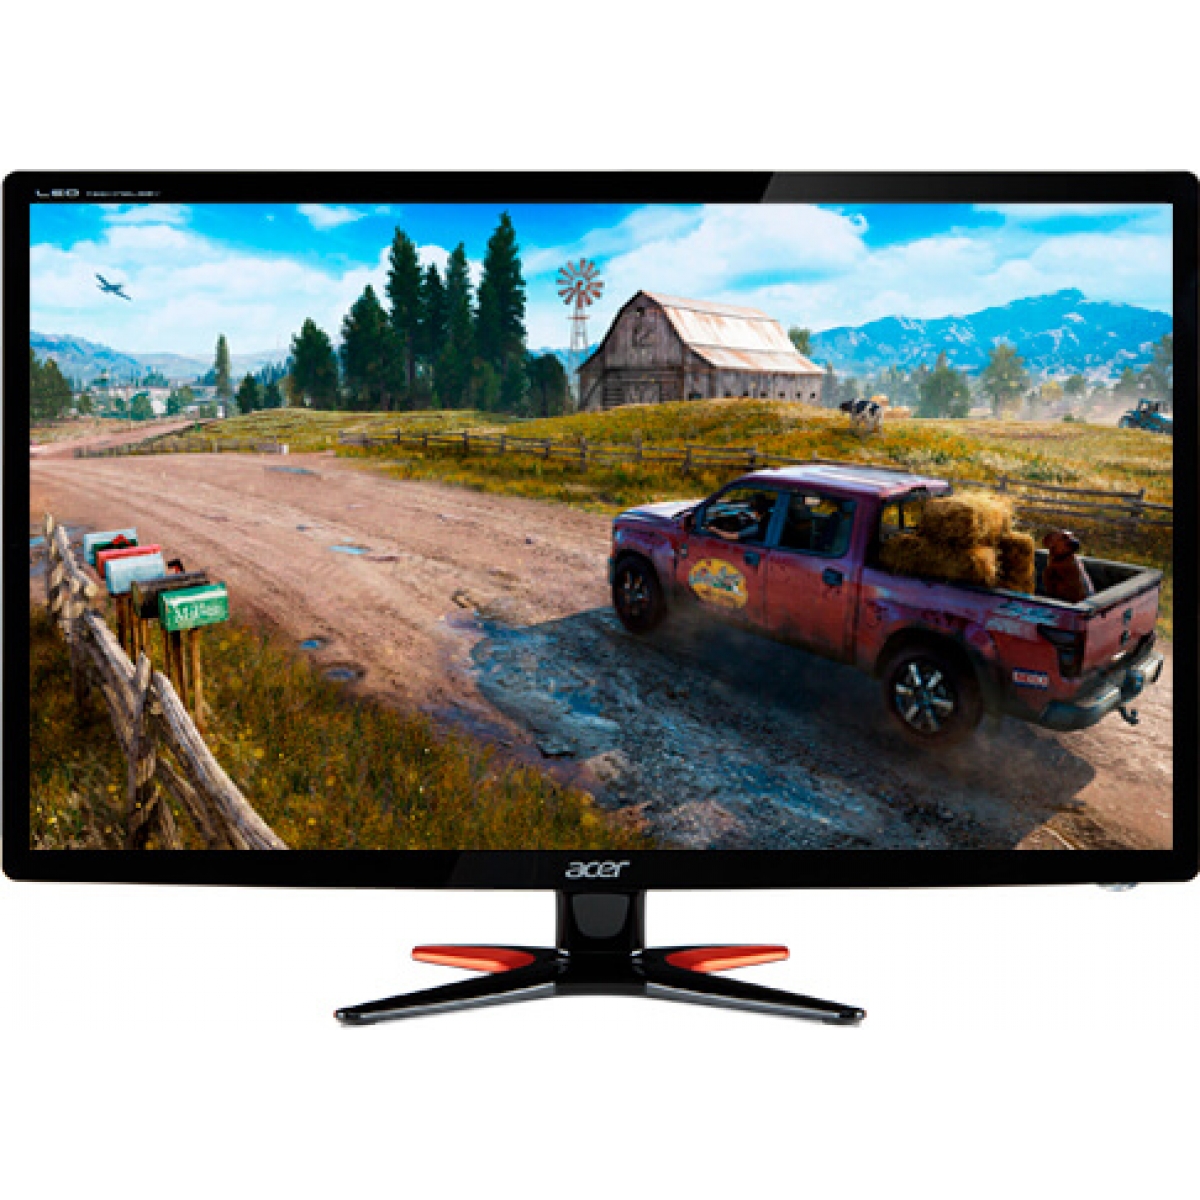 Monitor Gamer Acer 24 Pol, Full HD, 144Hz, 1ms, GN246HL